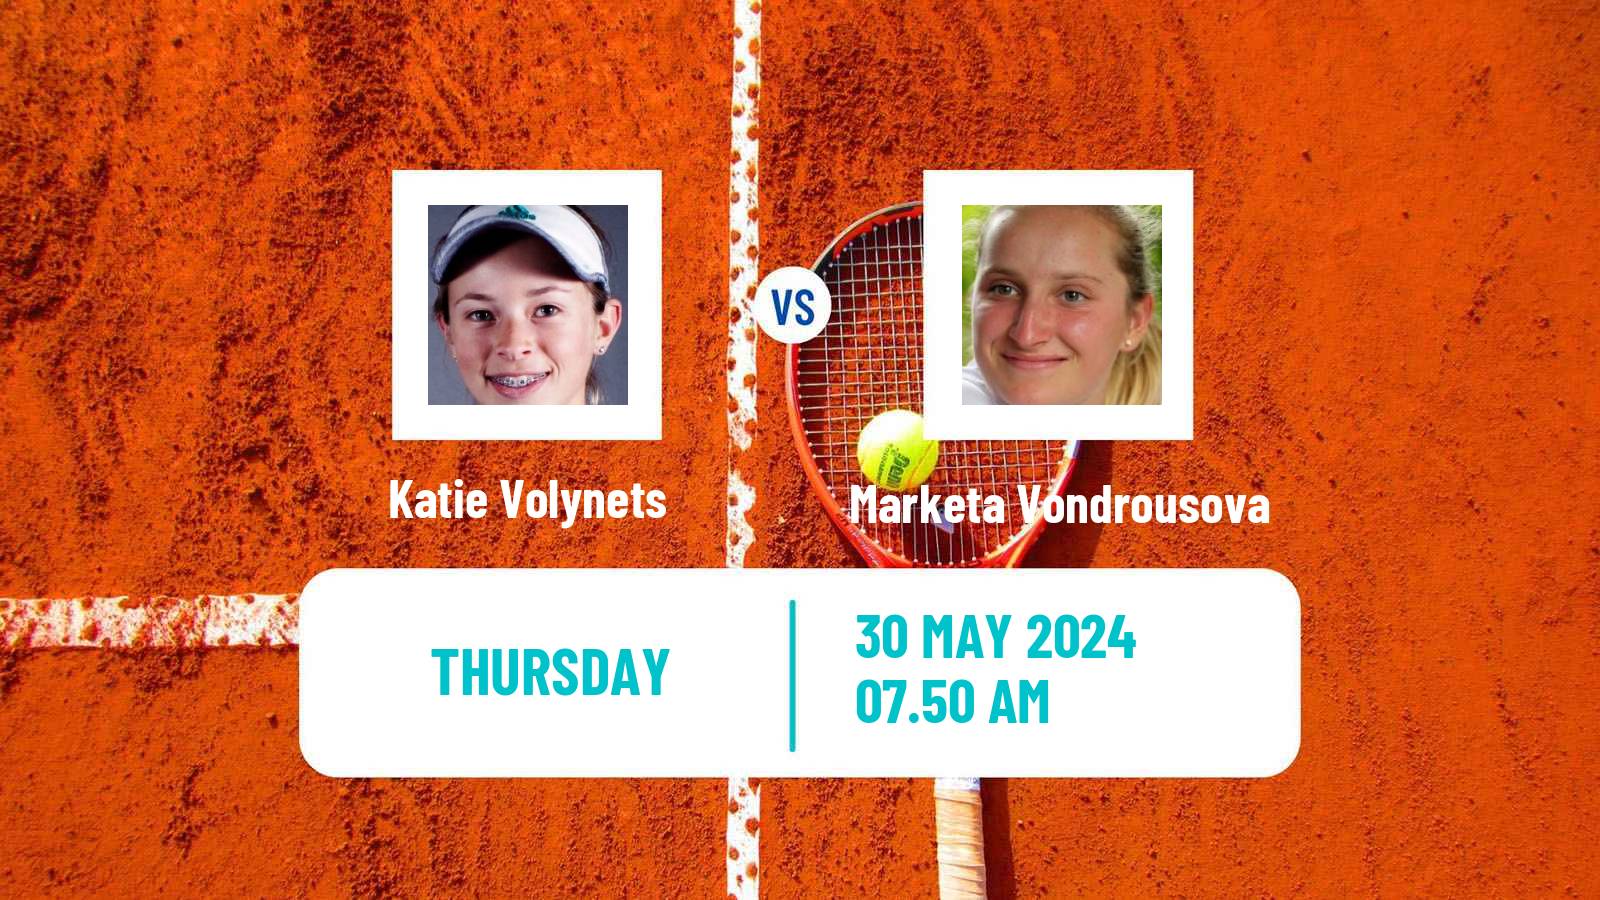 Tennis WTA Roland Garros Katie Volynets - Marketa Vondrousova